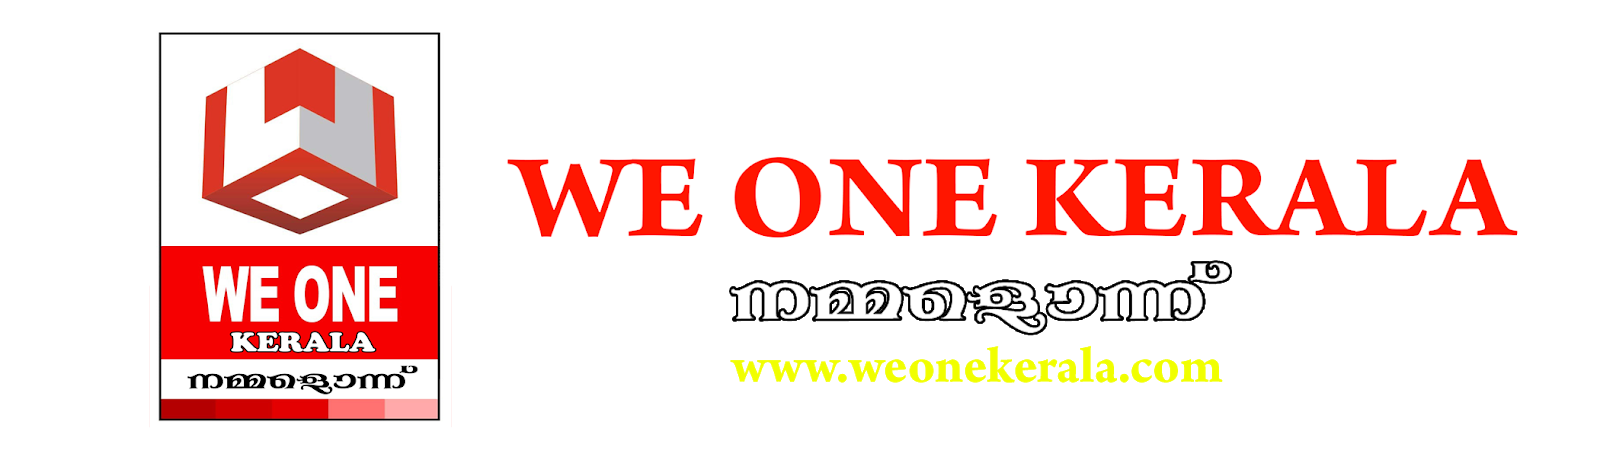 We One Kerala